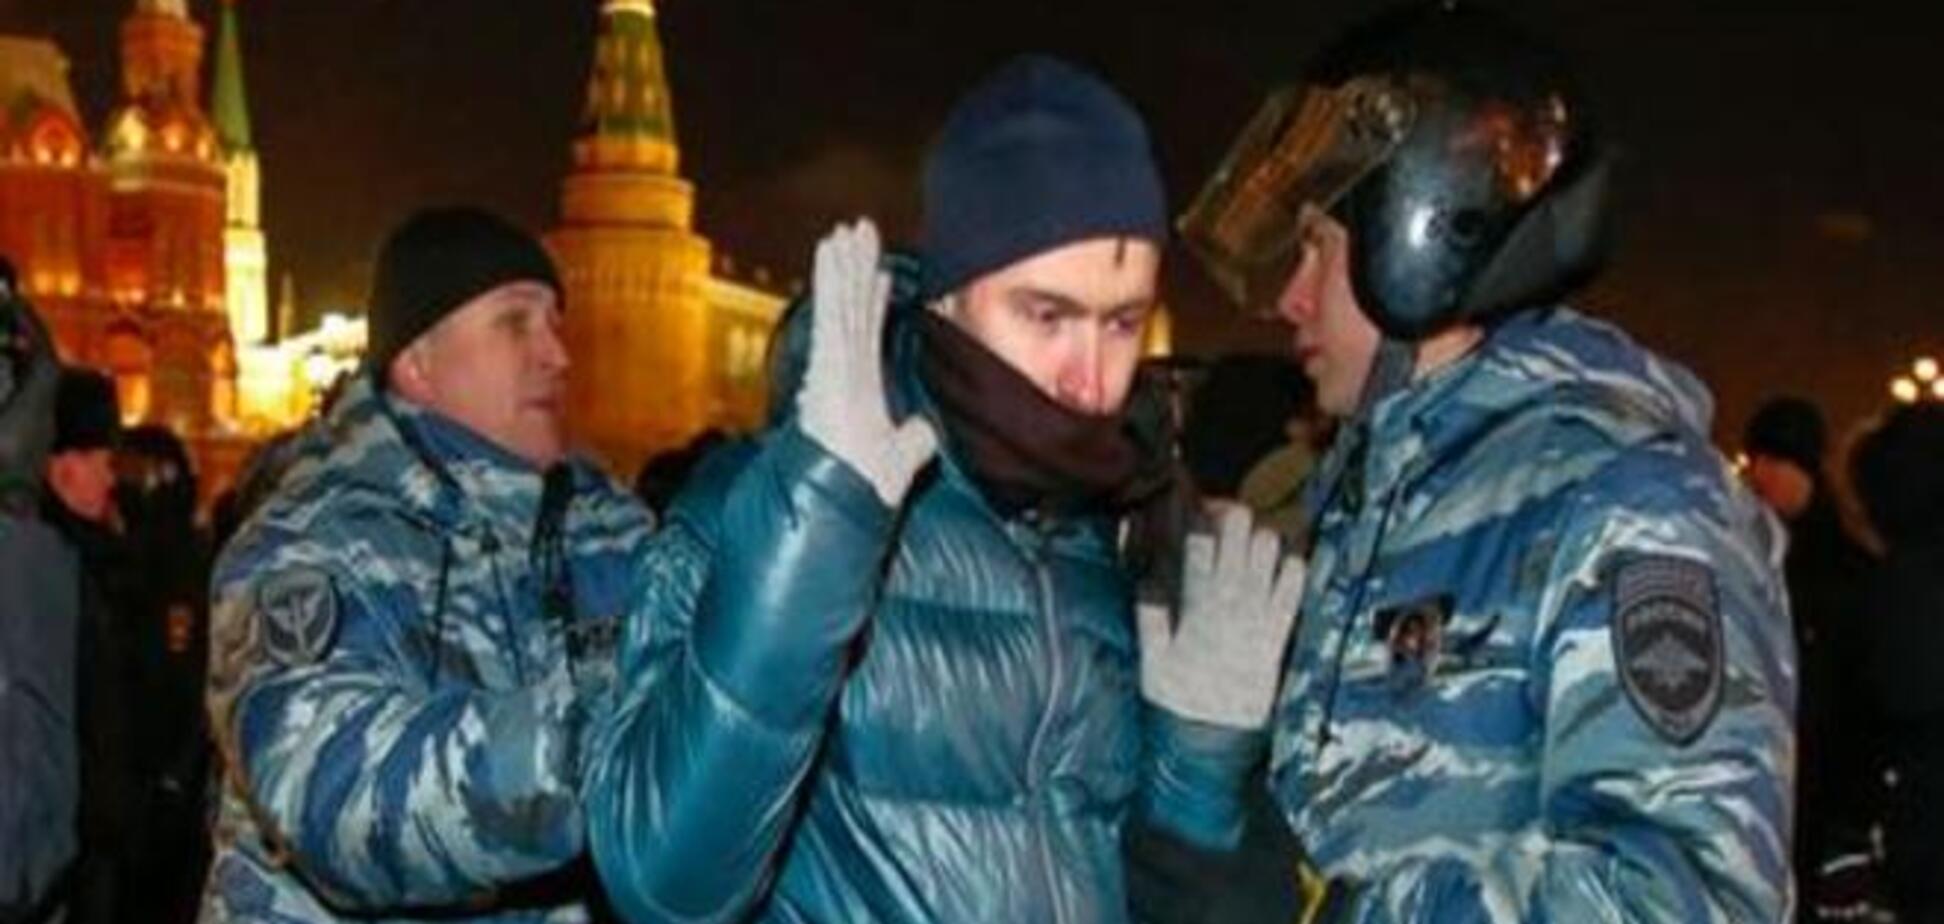 Самая холодная ночь: как протестовали сторонники Навального